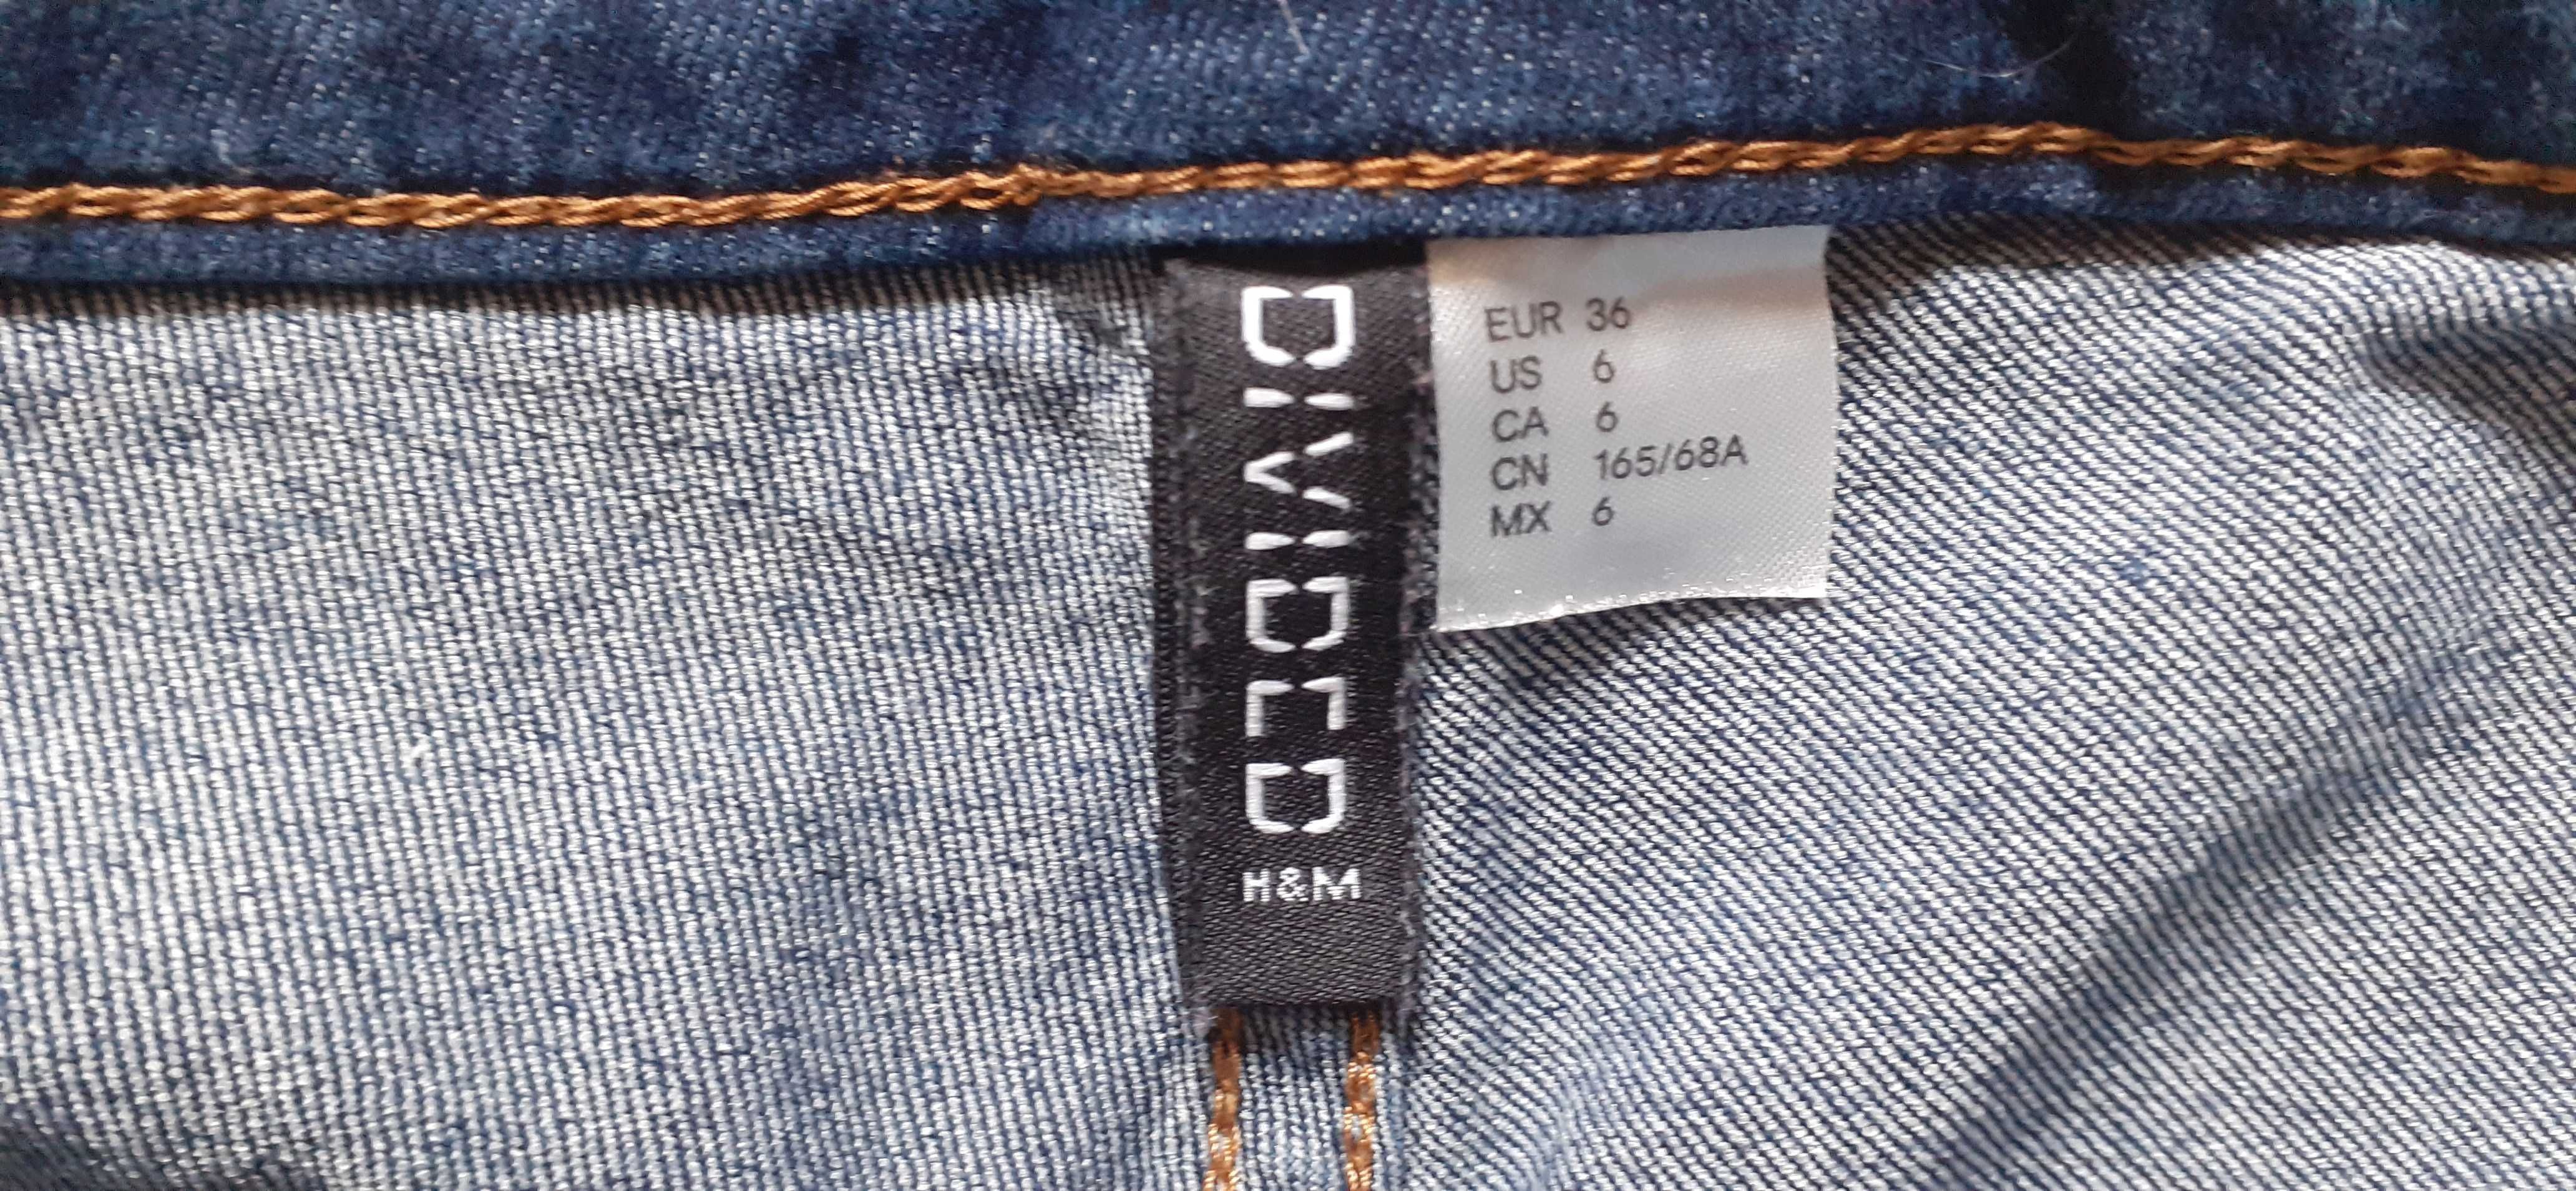 H&M damskie jeansowe  krótkie spodenki, szorty, r. 36.